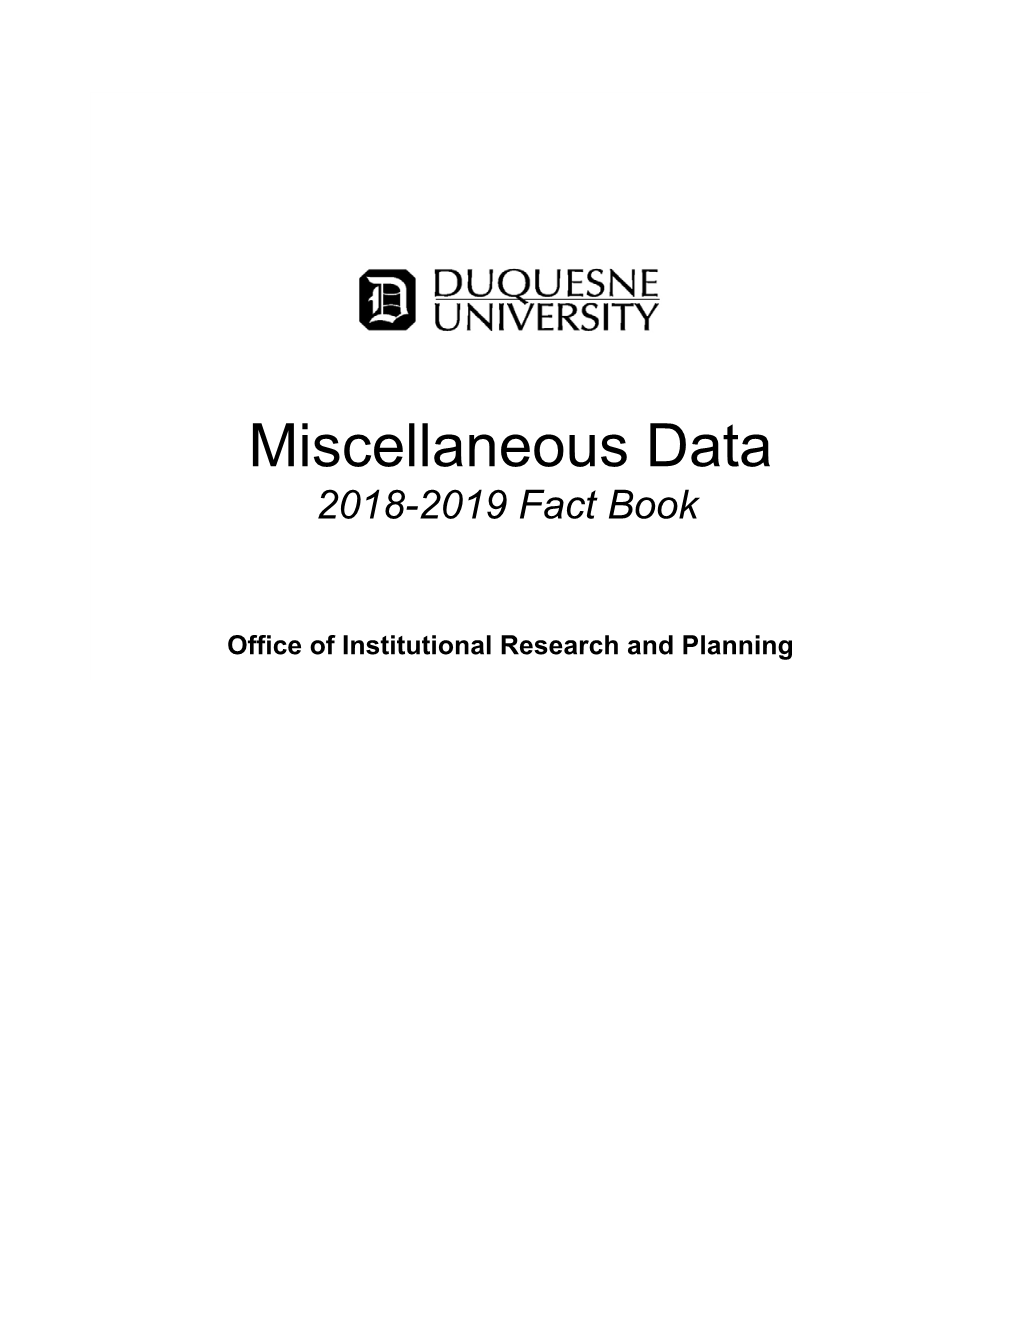 Miscellaneous Data 2018-2019 Fact Book